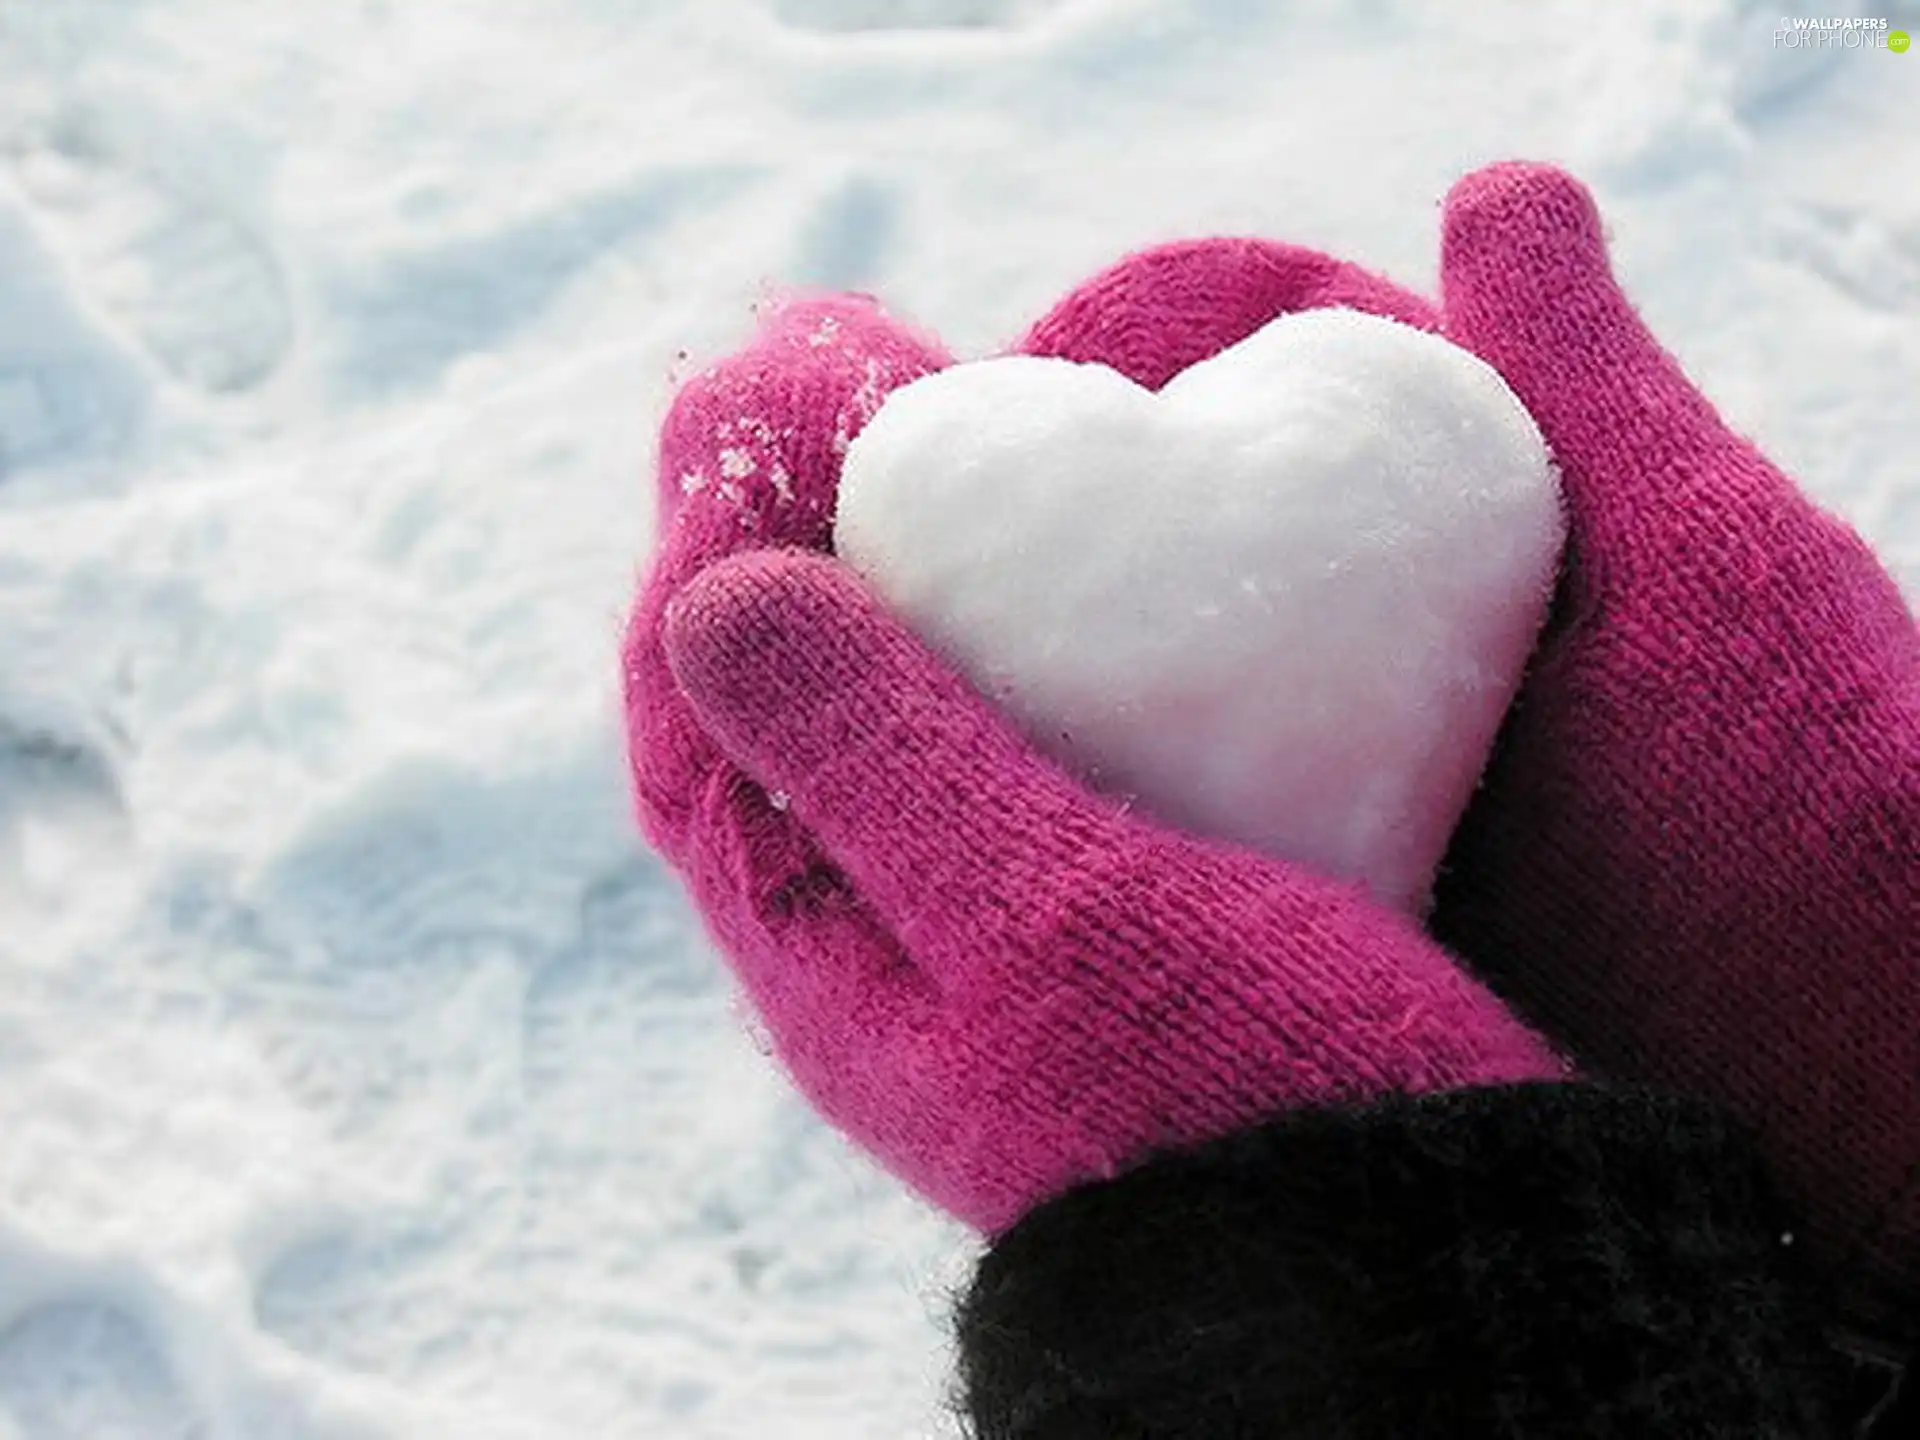 Heart teddybear, snow